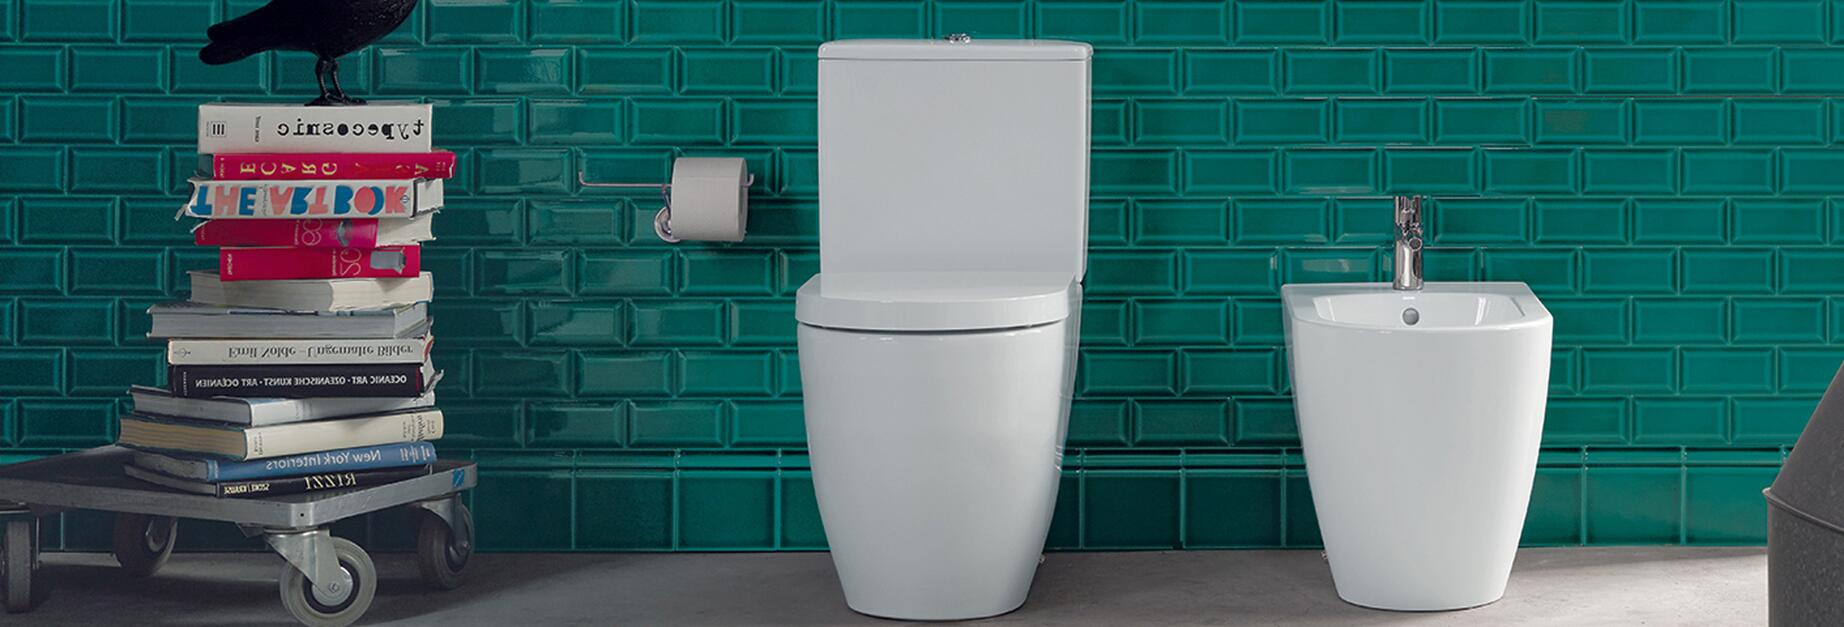 Toilettes : pourquoi choisir du carrelage pour mes WC ?